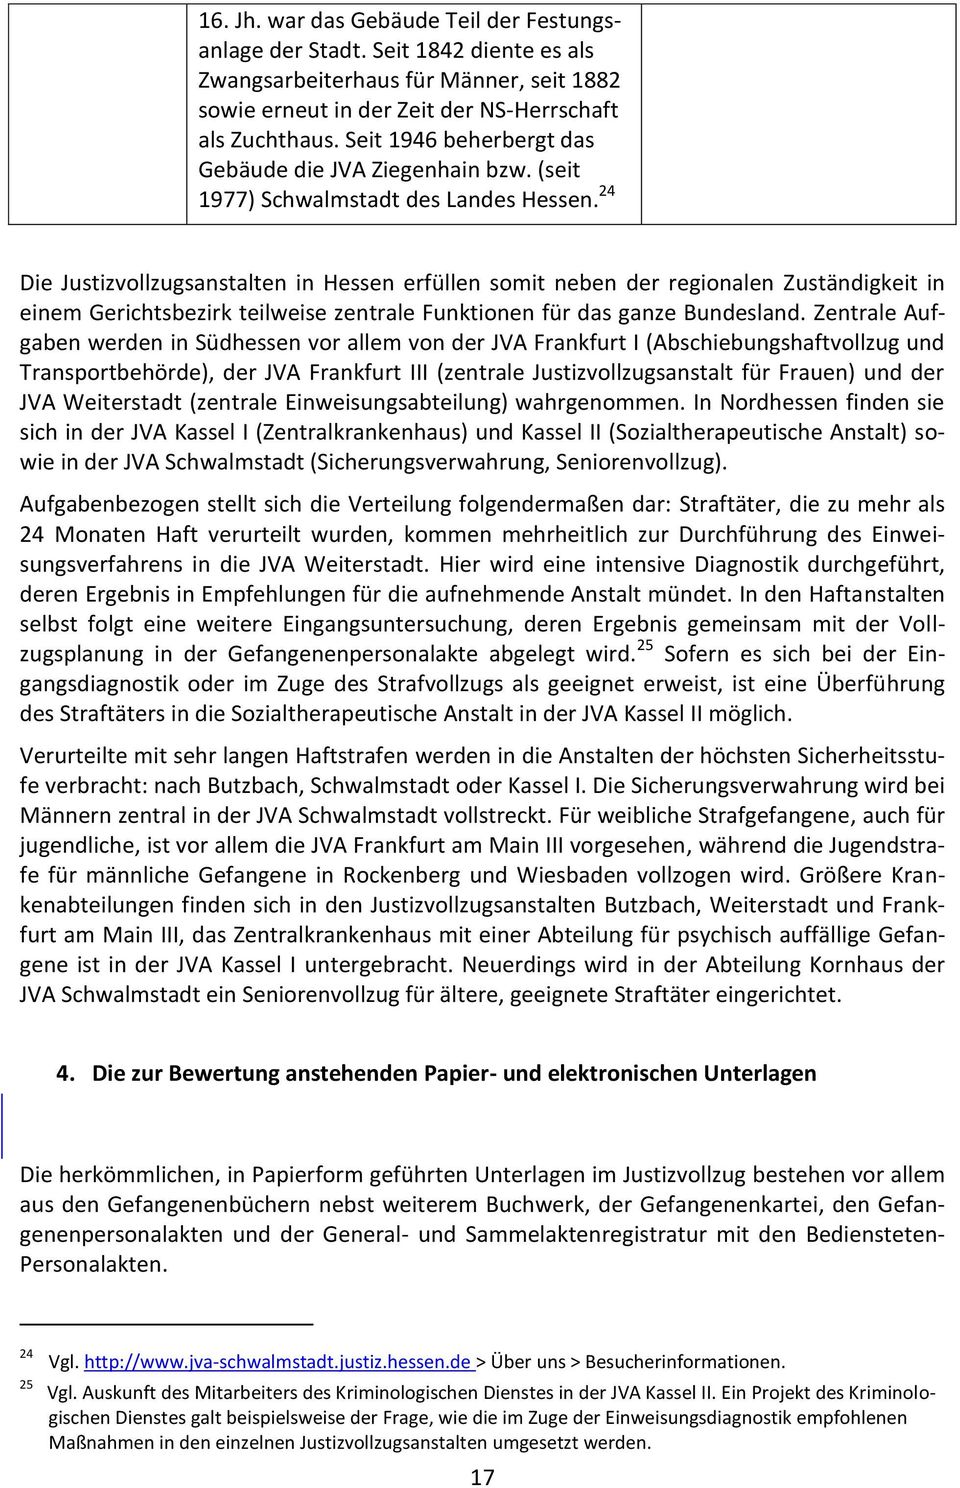 24 Die Justizvollzugsanstalten in Hessen erfüllen somit neben der regionalen Zuständigkeit in einem Gerichtsbezirk teilweise zentrale Funktionen für das ganze undesland.